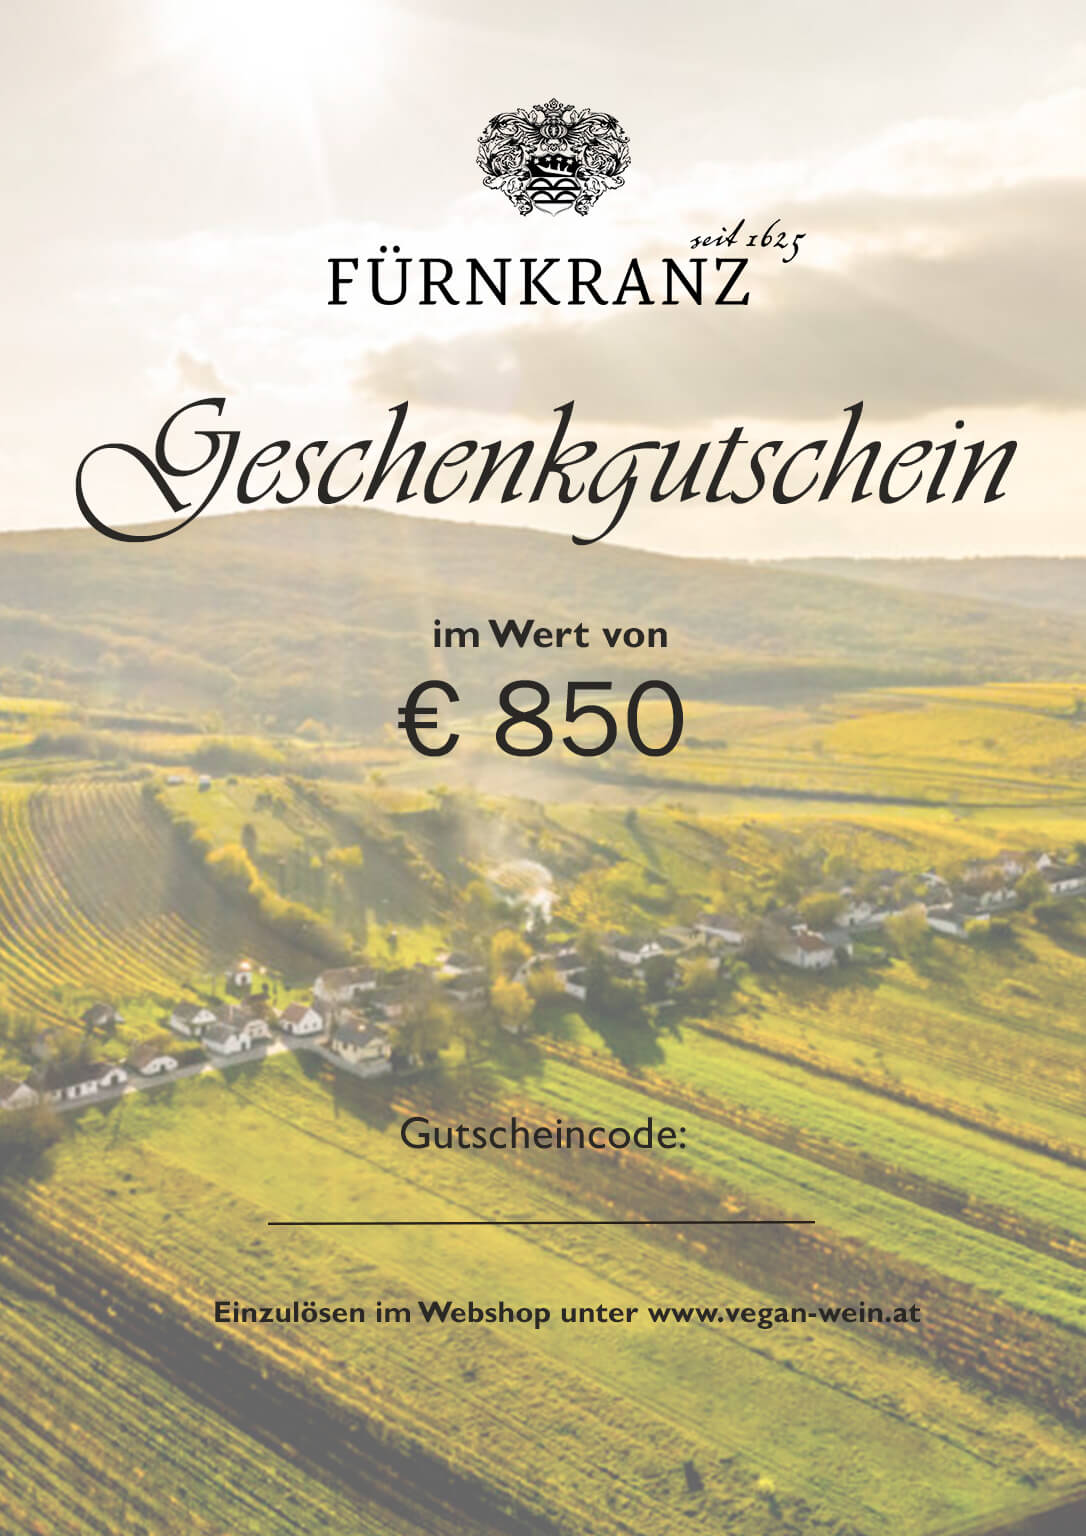 Geschenkgutschein Weingut Fürnkranz - €850